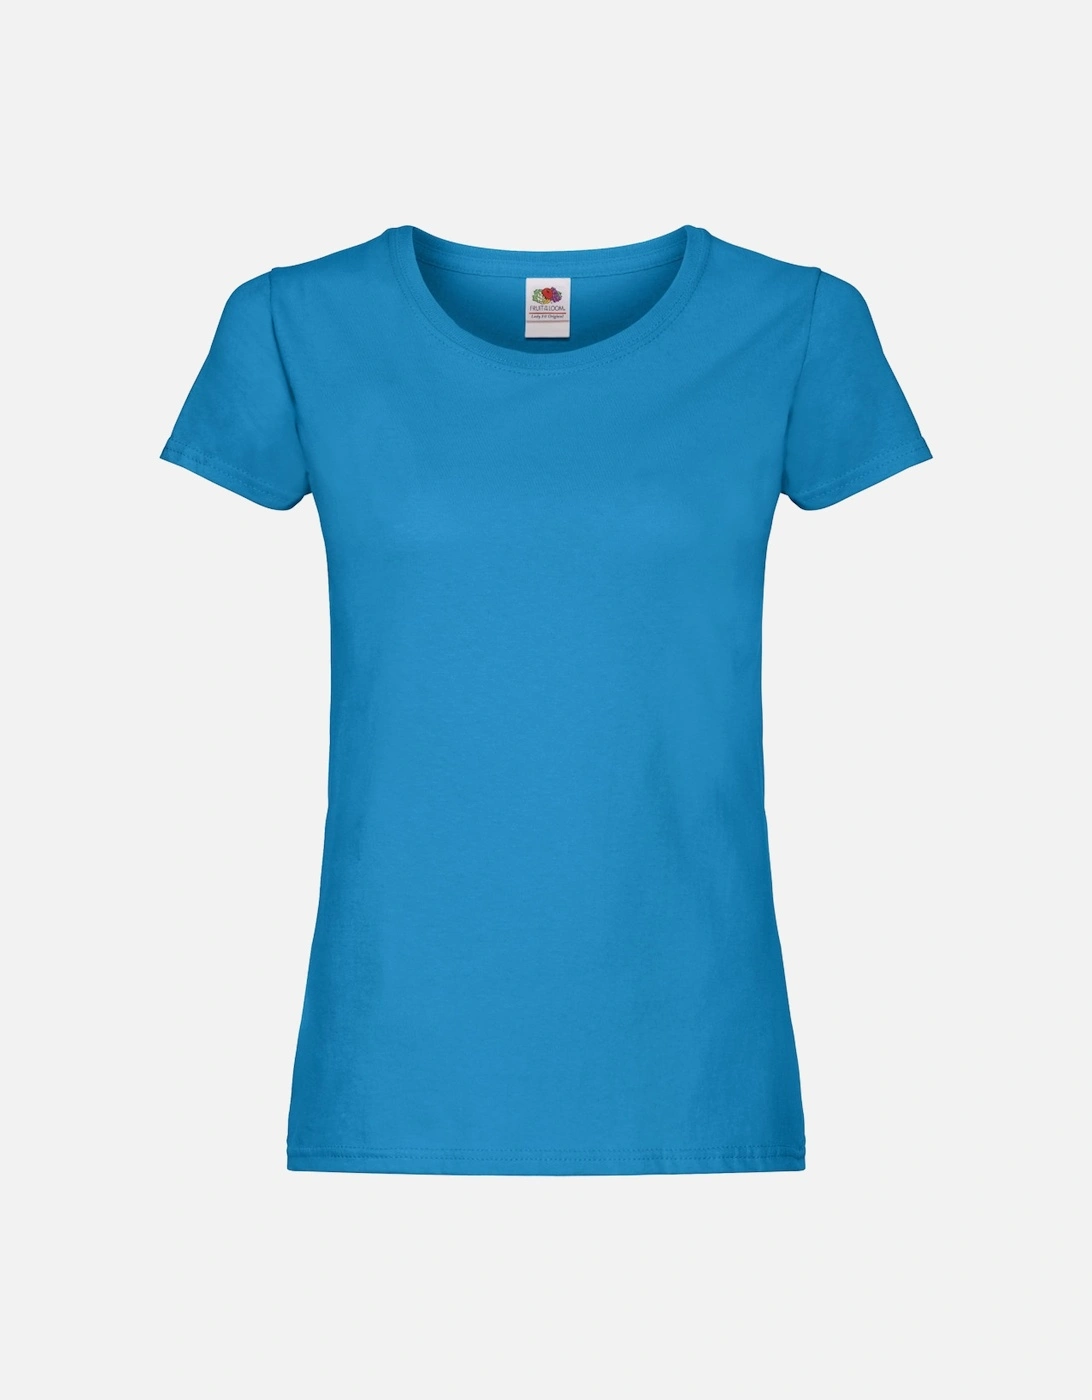 Womens/Ladies T-Shirt, 4 of 3